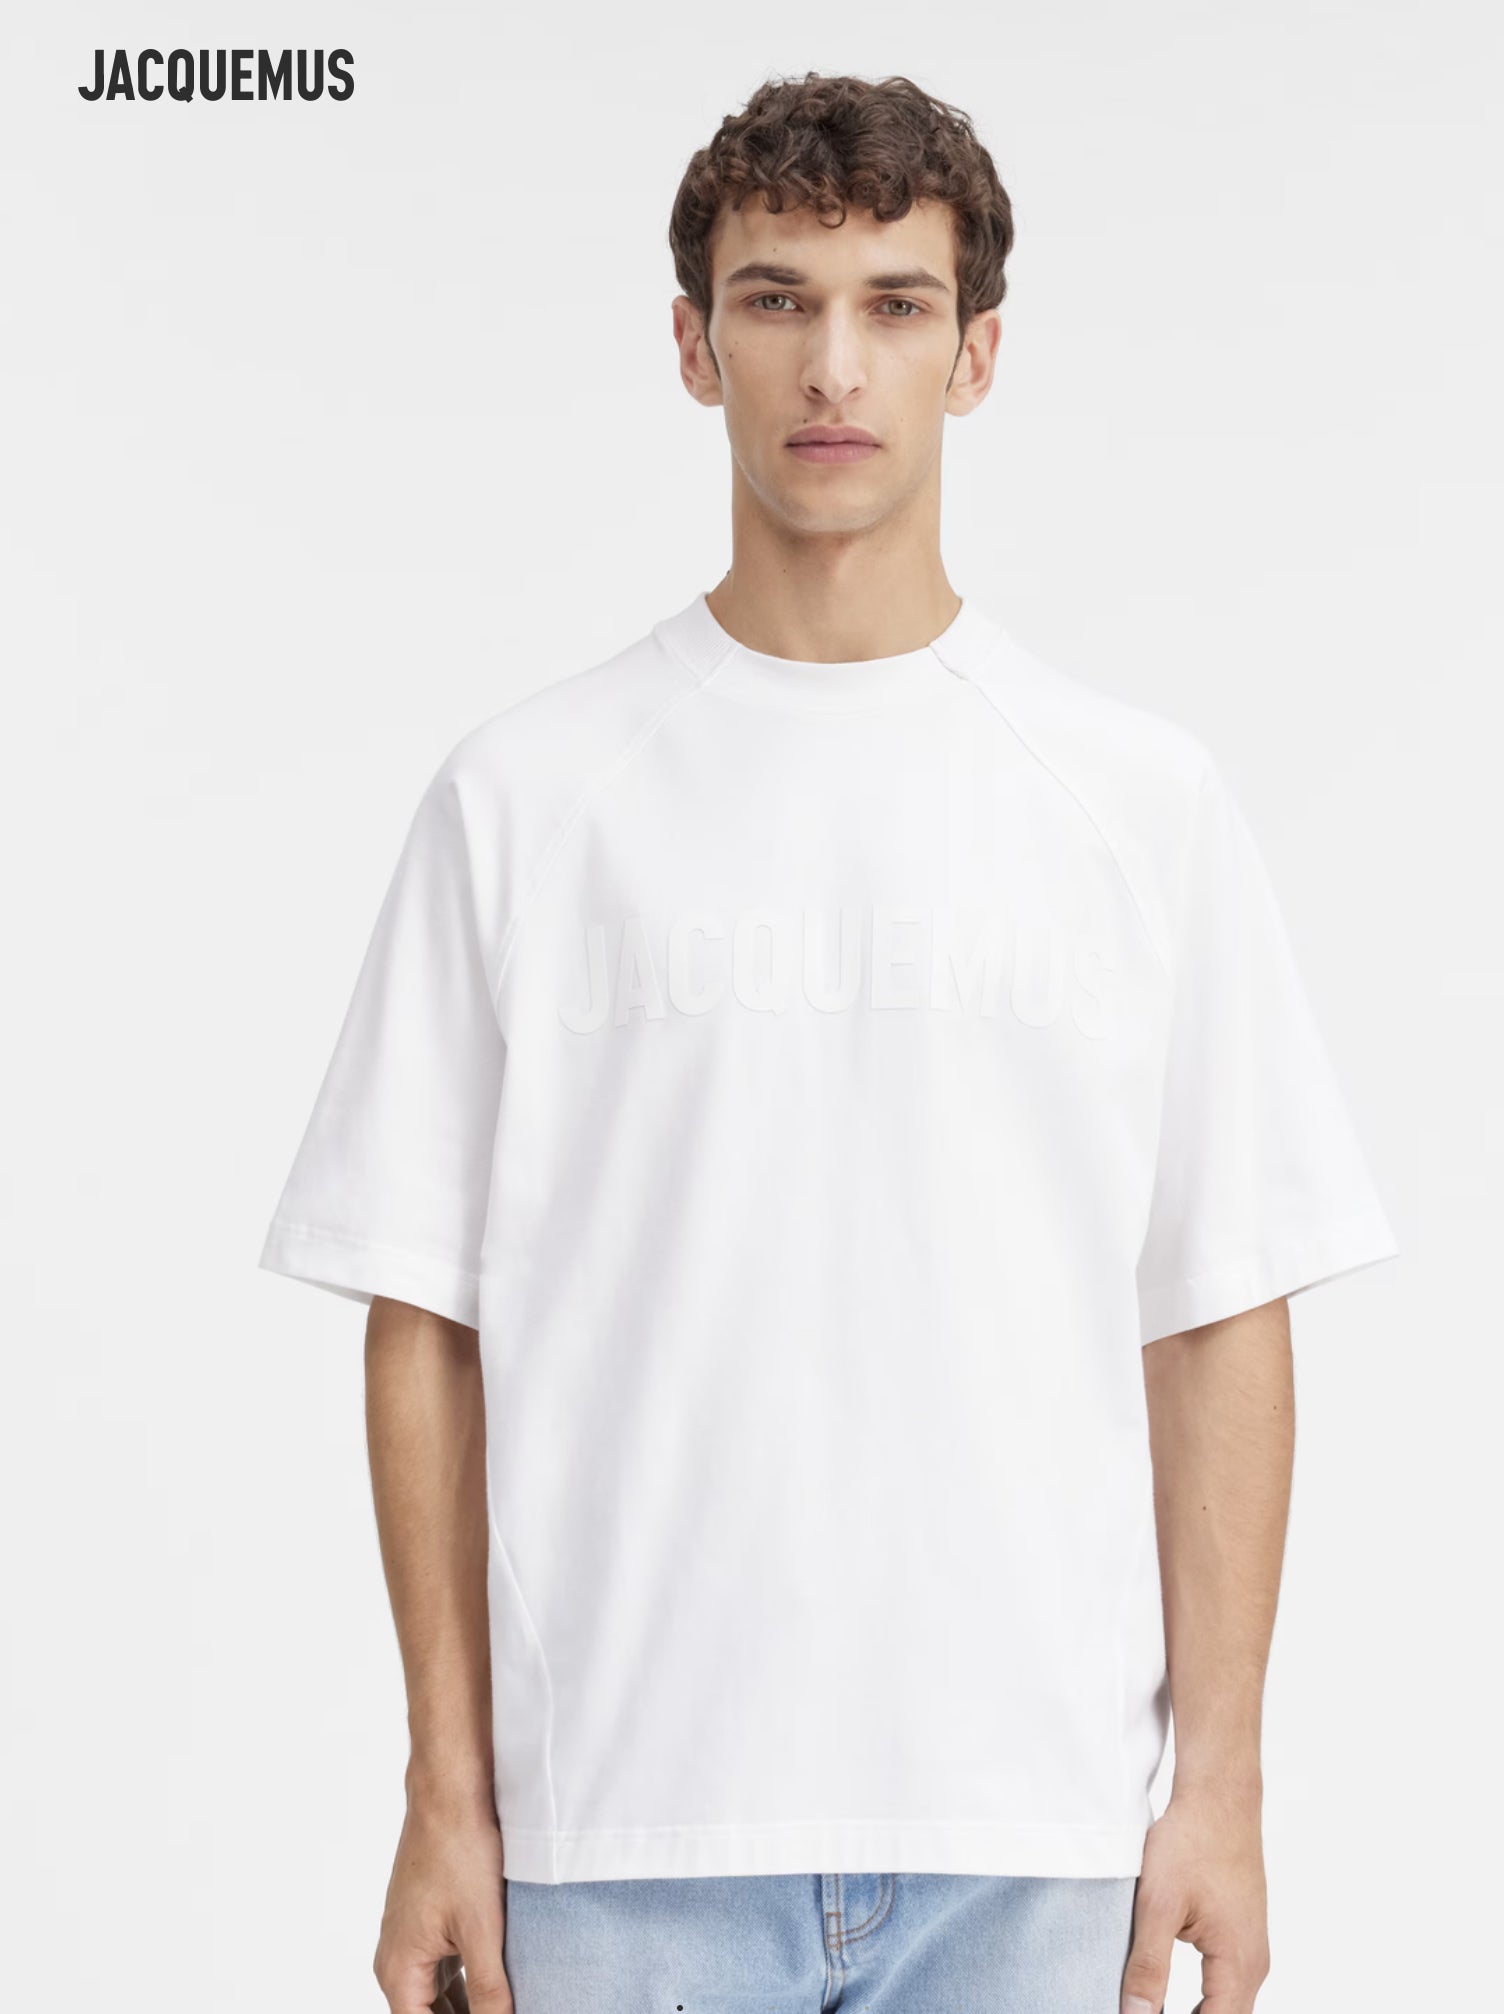 Le t-shirt Typo - white